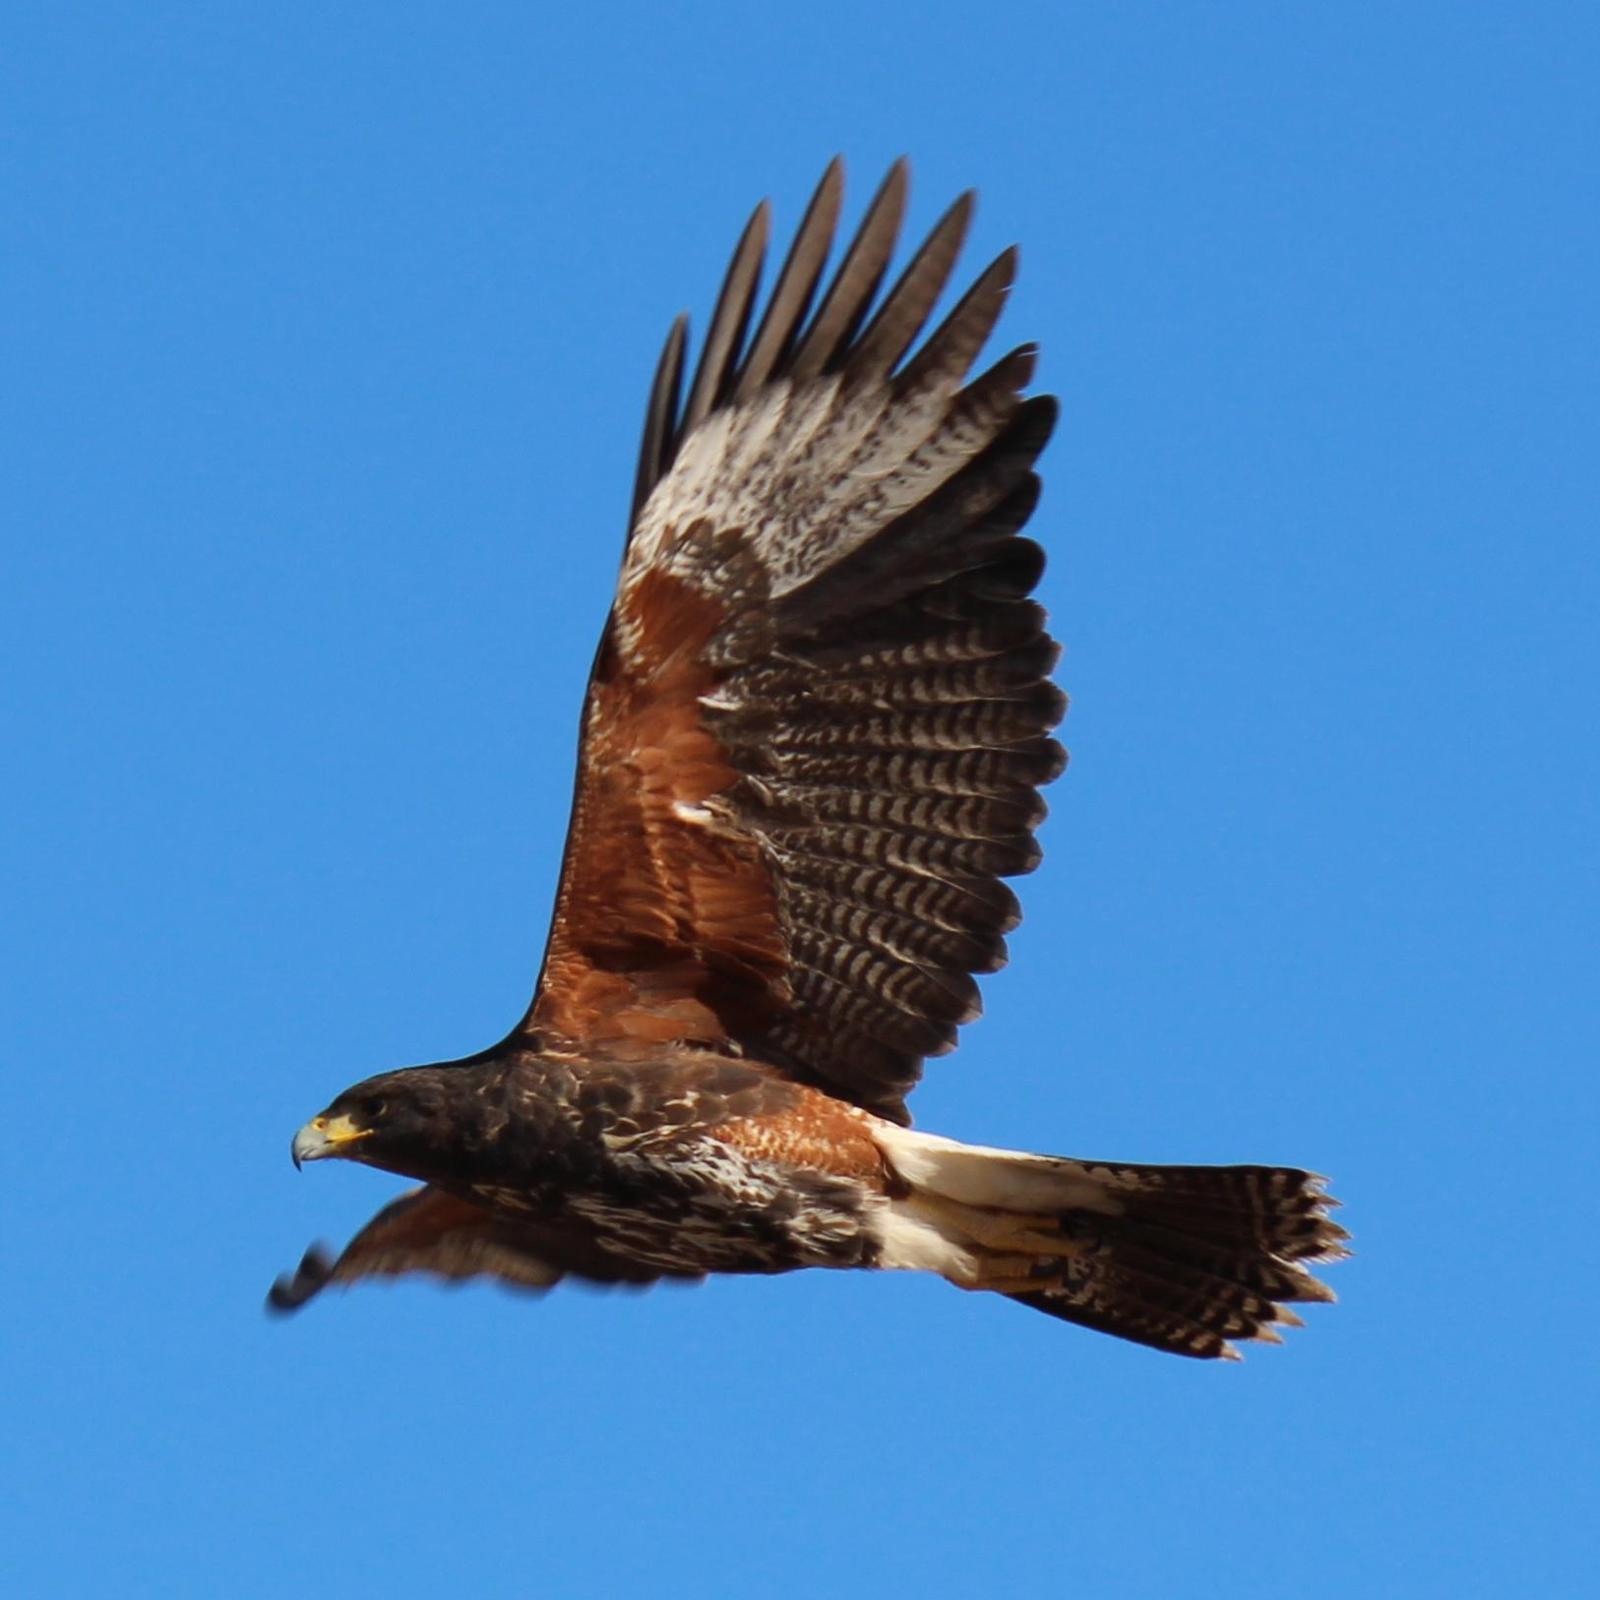 Harris's Hawk Photo by Geoff Reeves